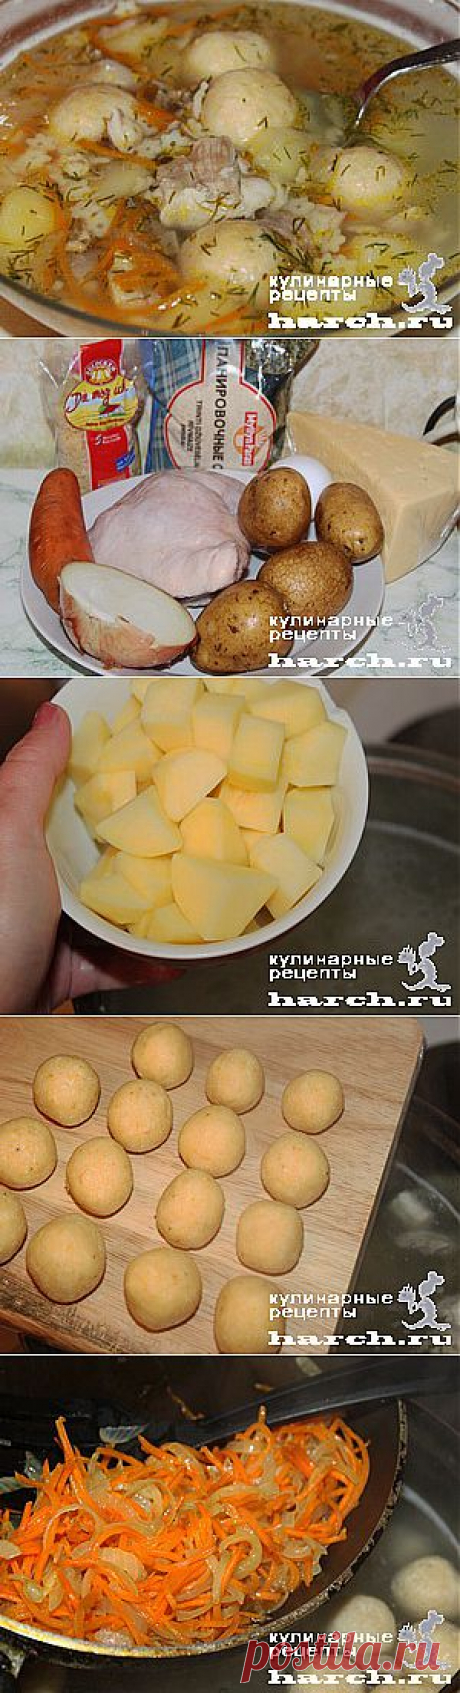 Куриный супчик с сырными колобками | Харч.ру - рецепты для любителей вкусно поесть